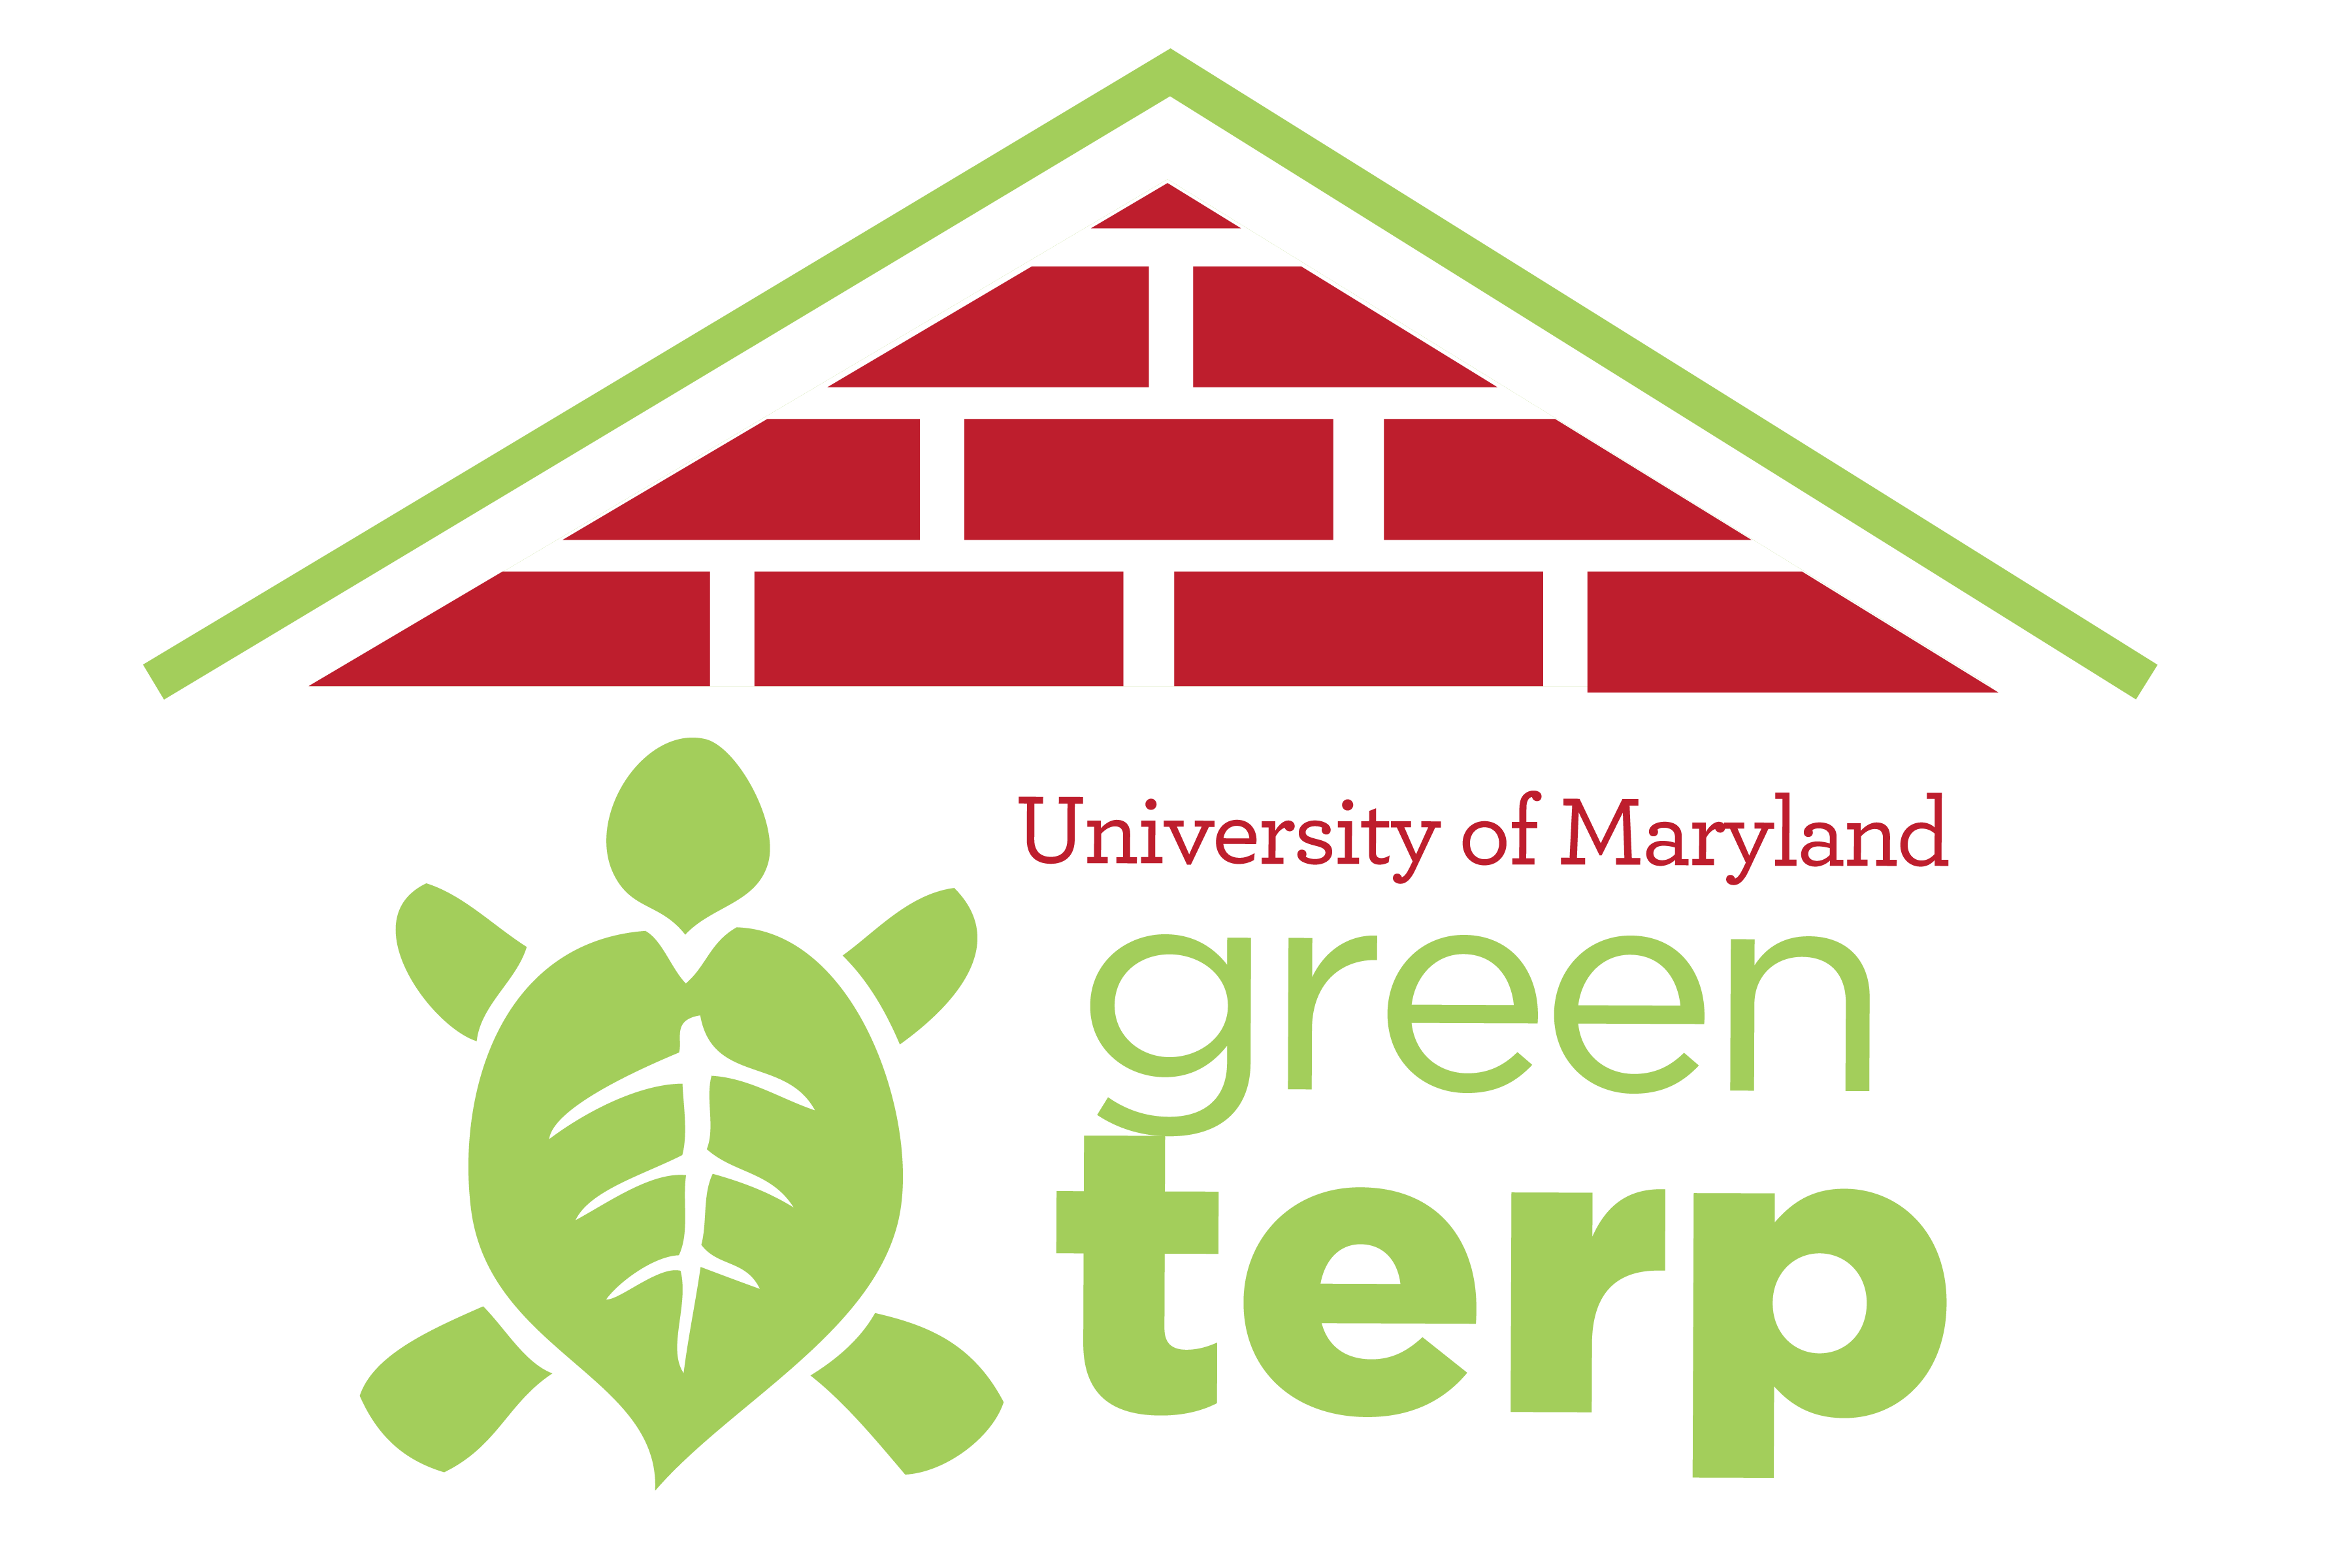 Green Terp